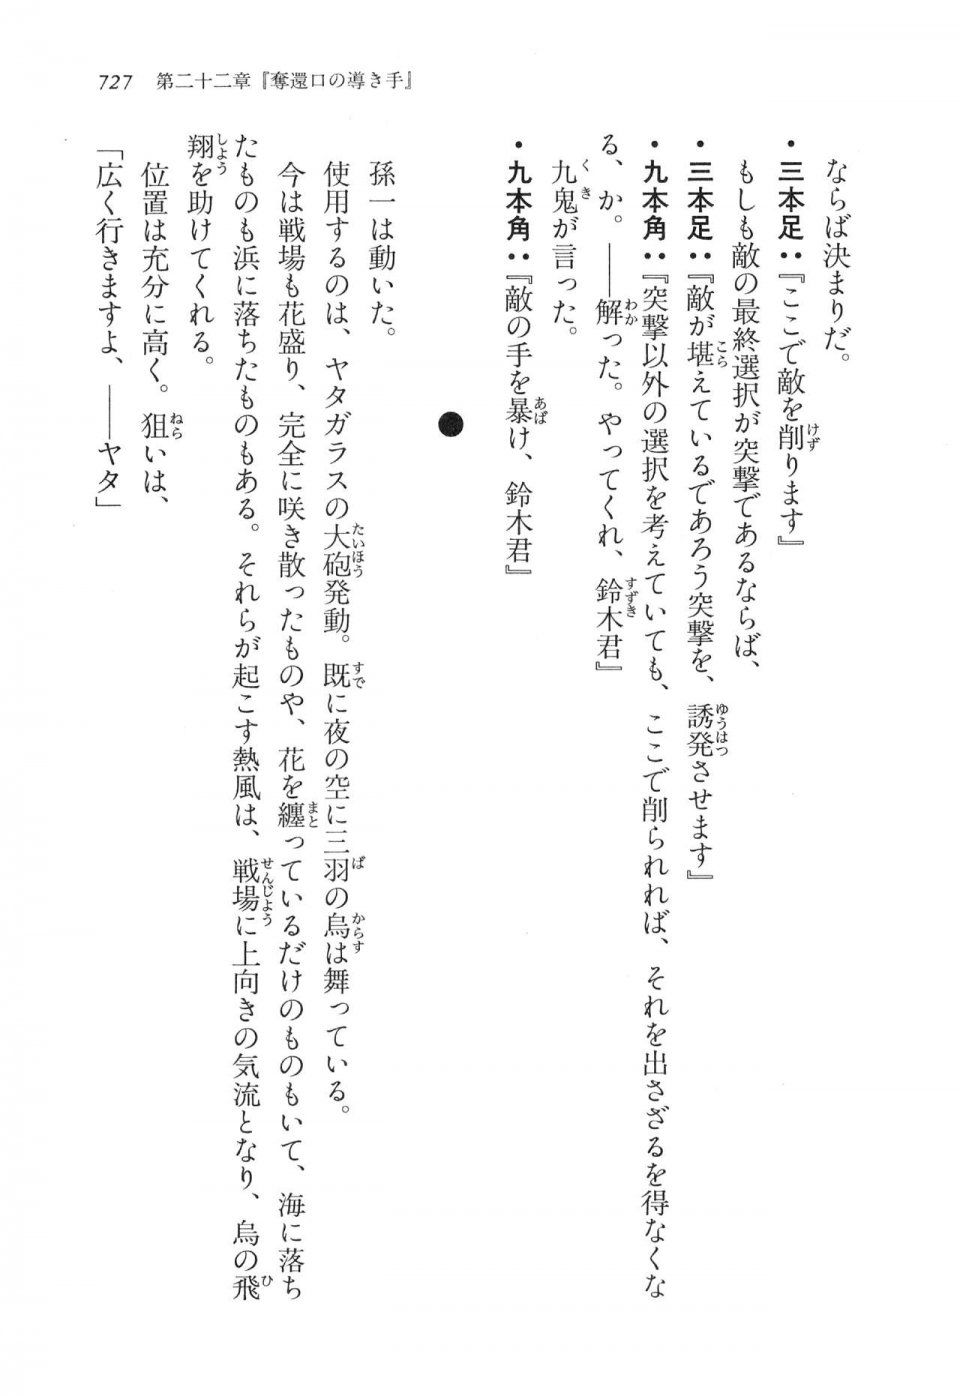 Kyoukai Senjou no Horizon LN Vol 16(7A) - Photo #727